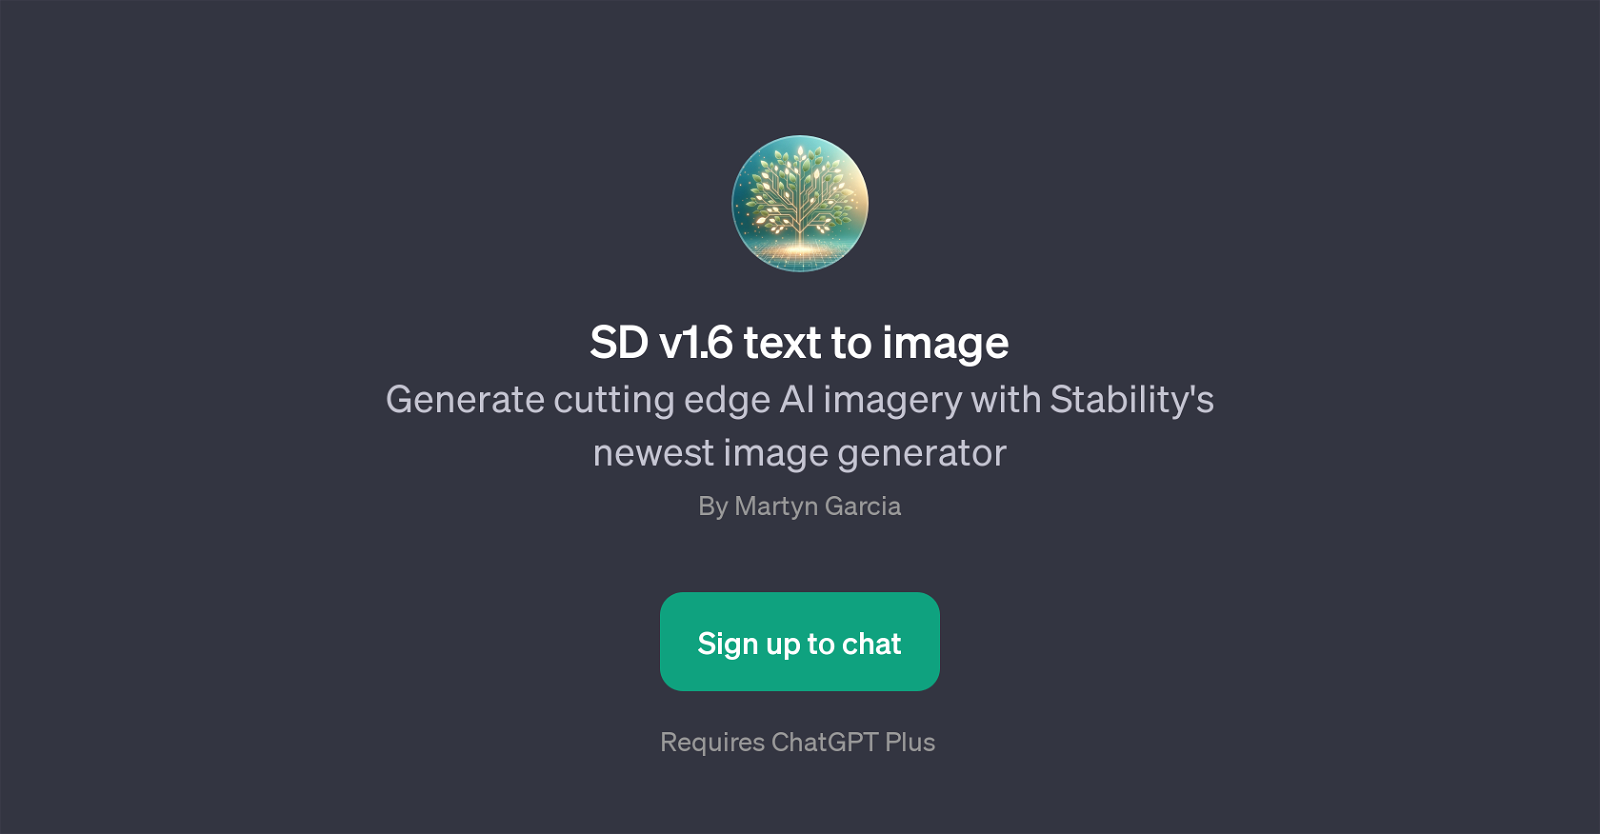 SD v1.6 text to image website